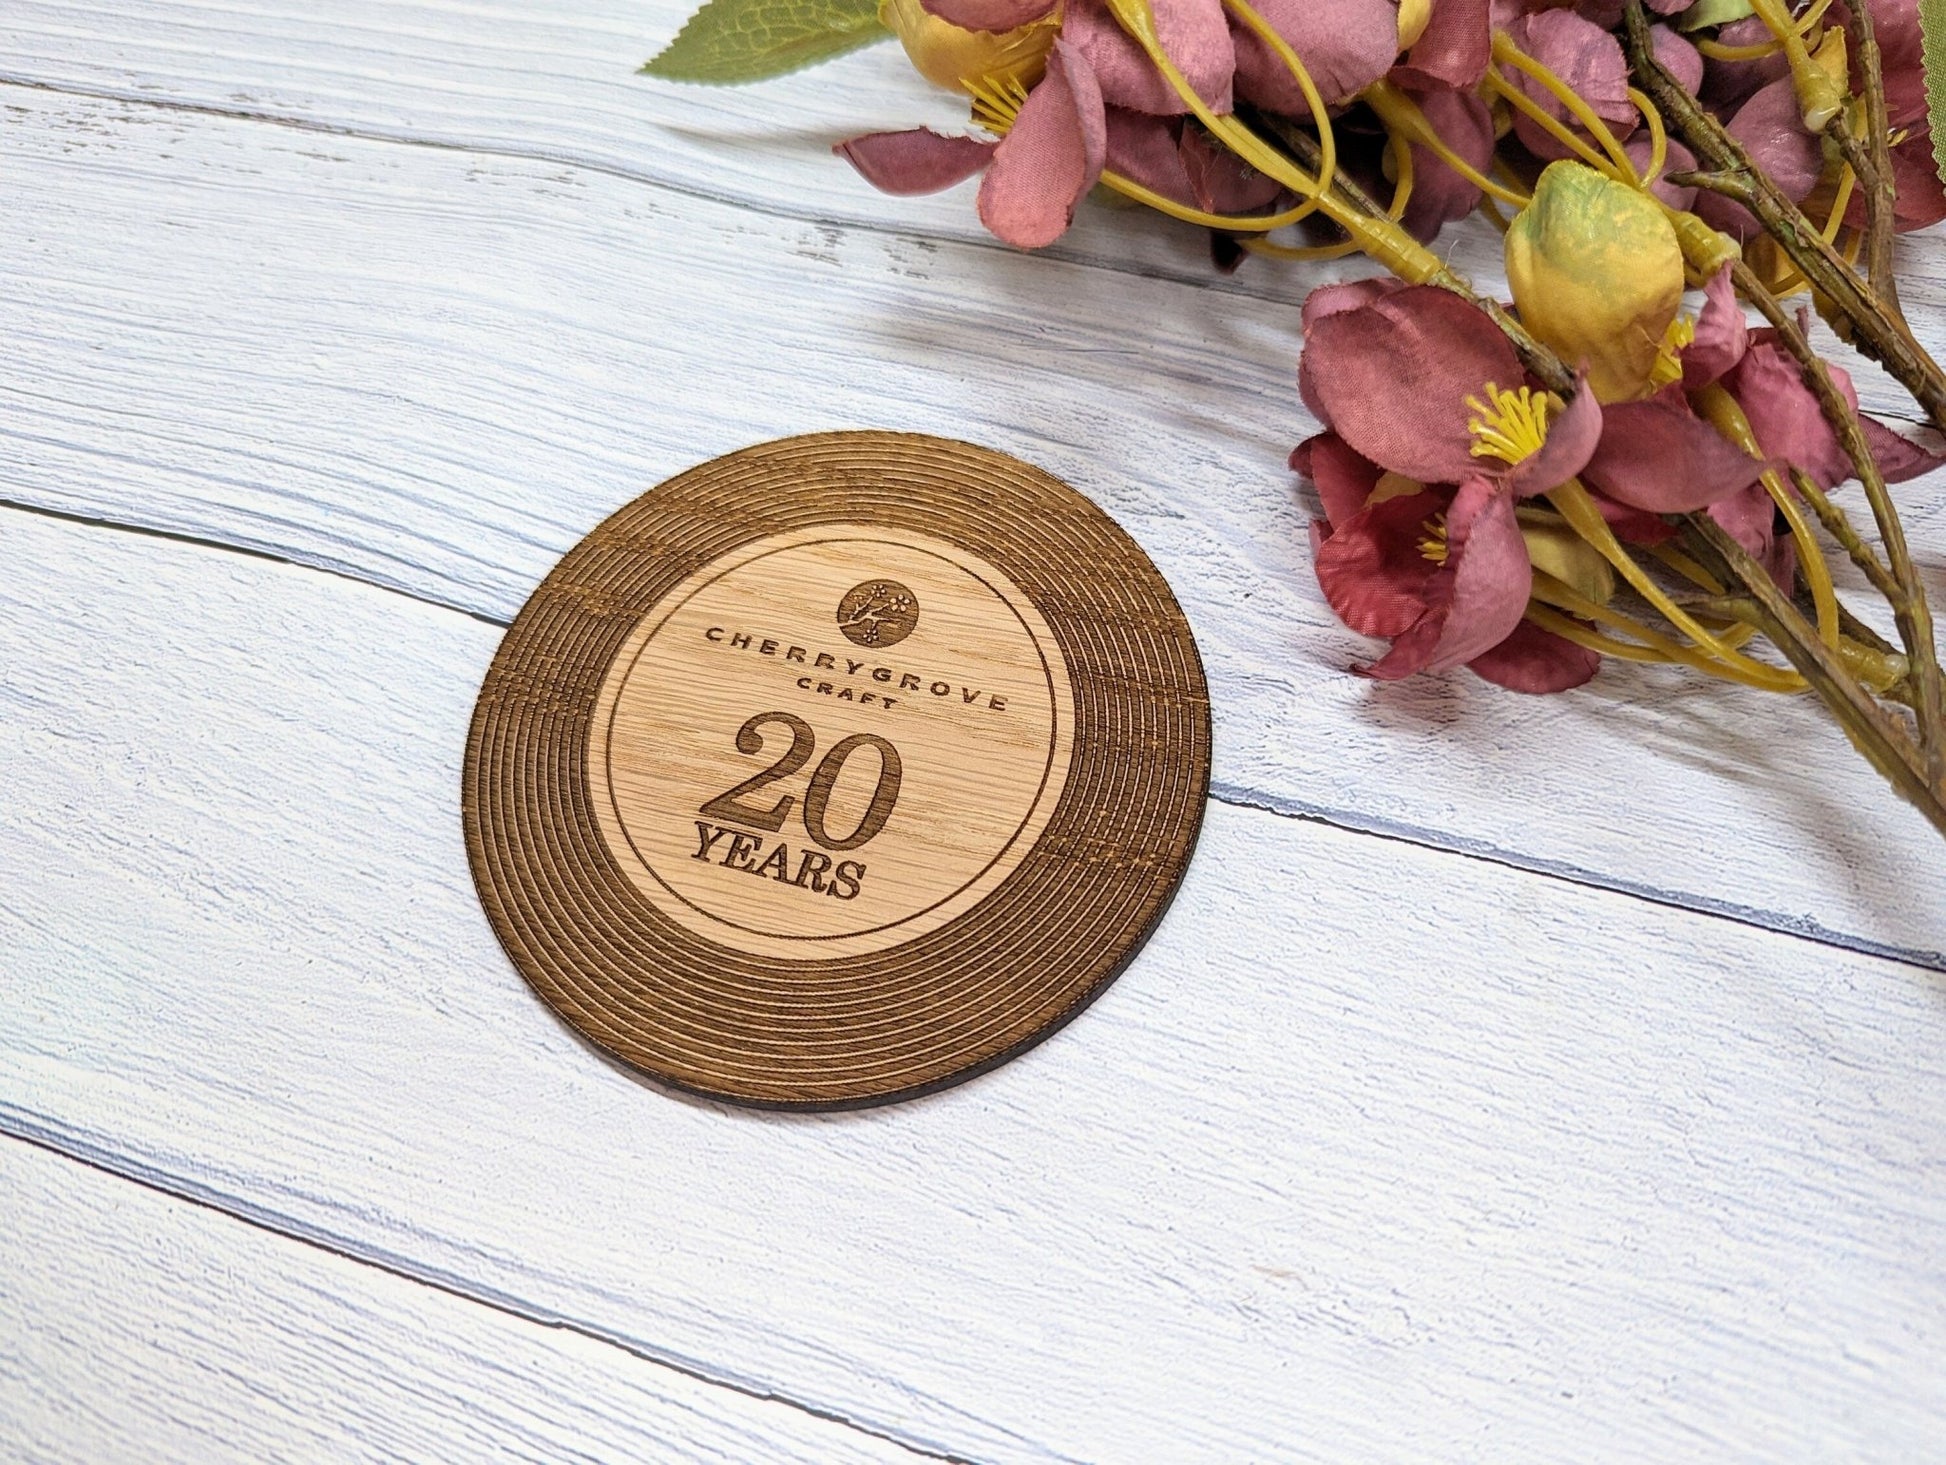 Custom Retro Vinyl Record Coaster for Businesses - Add Your Logo & Celebrate Milestones - Unique Promotional Marketing Item - CherryGroveCraft